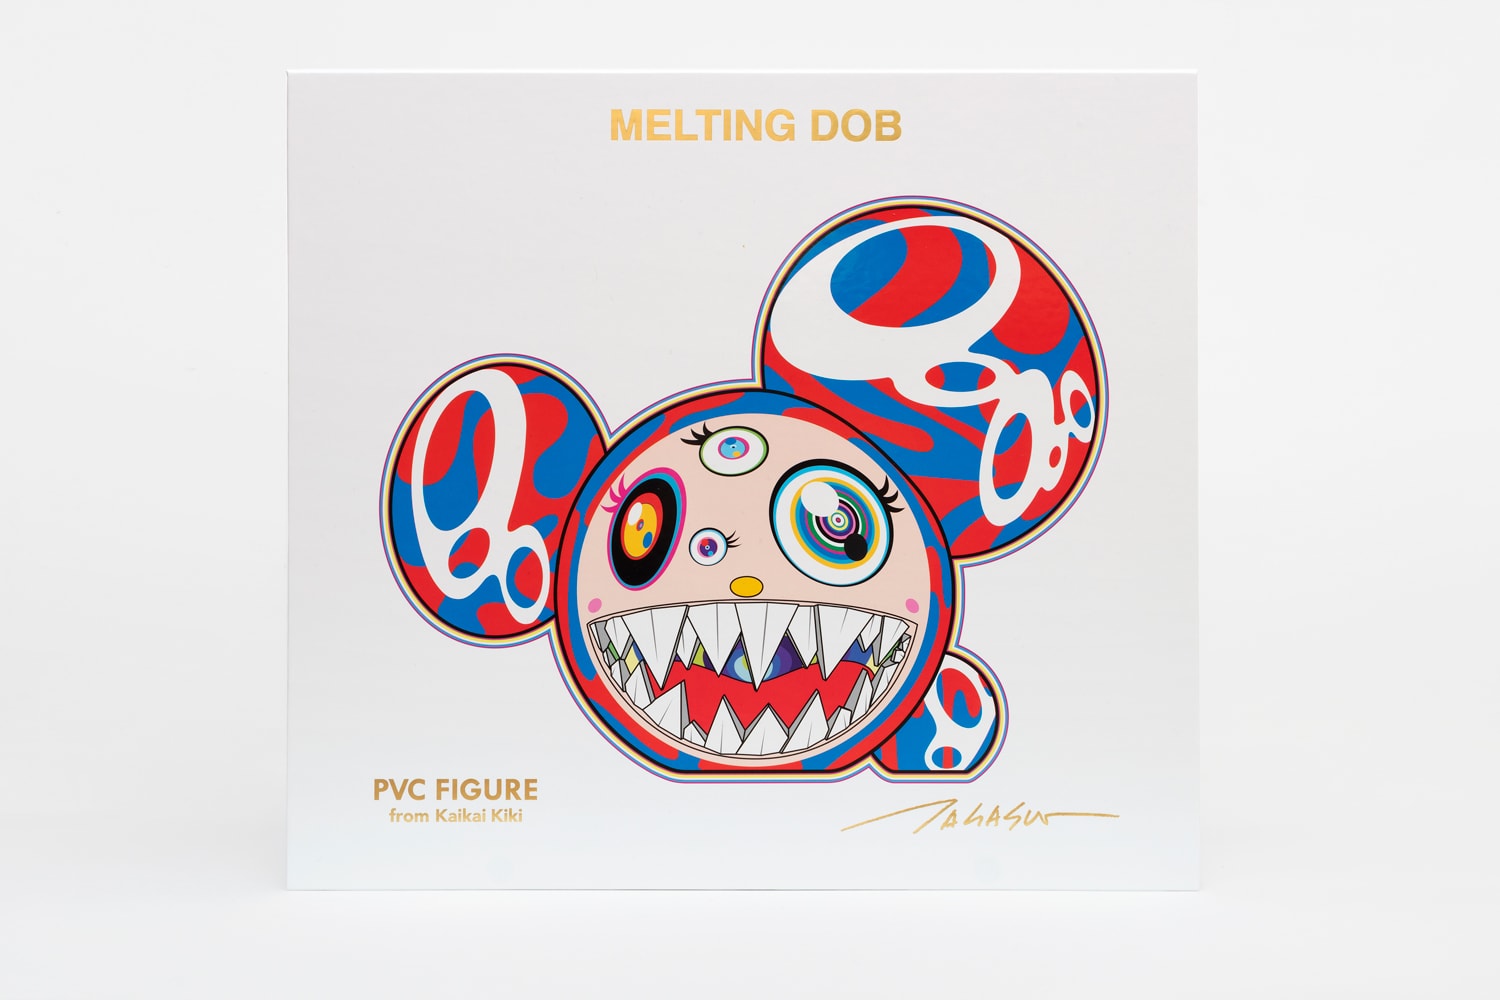 村上隆の新作フィギュア“Melting DOB”がアジア限定で発売 takashi murakami melting dob figure release edition sculpture artwork